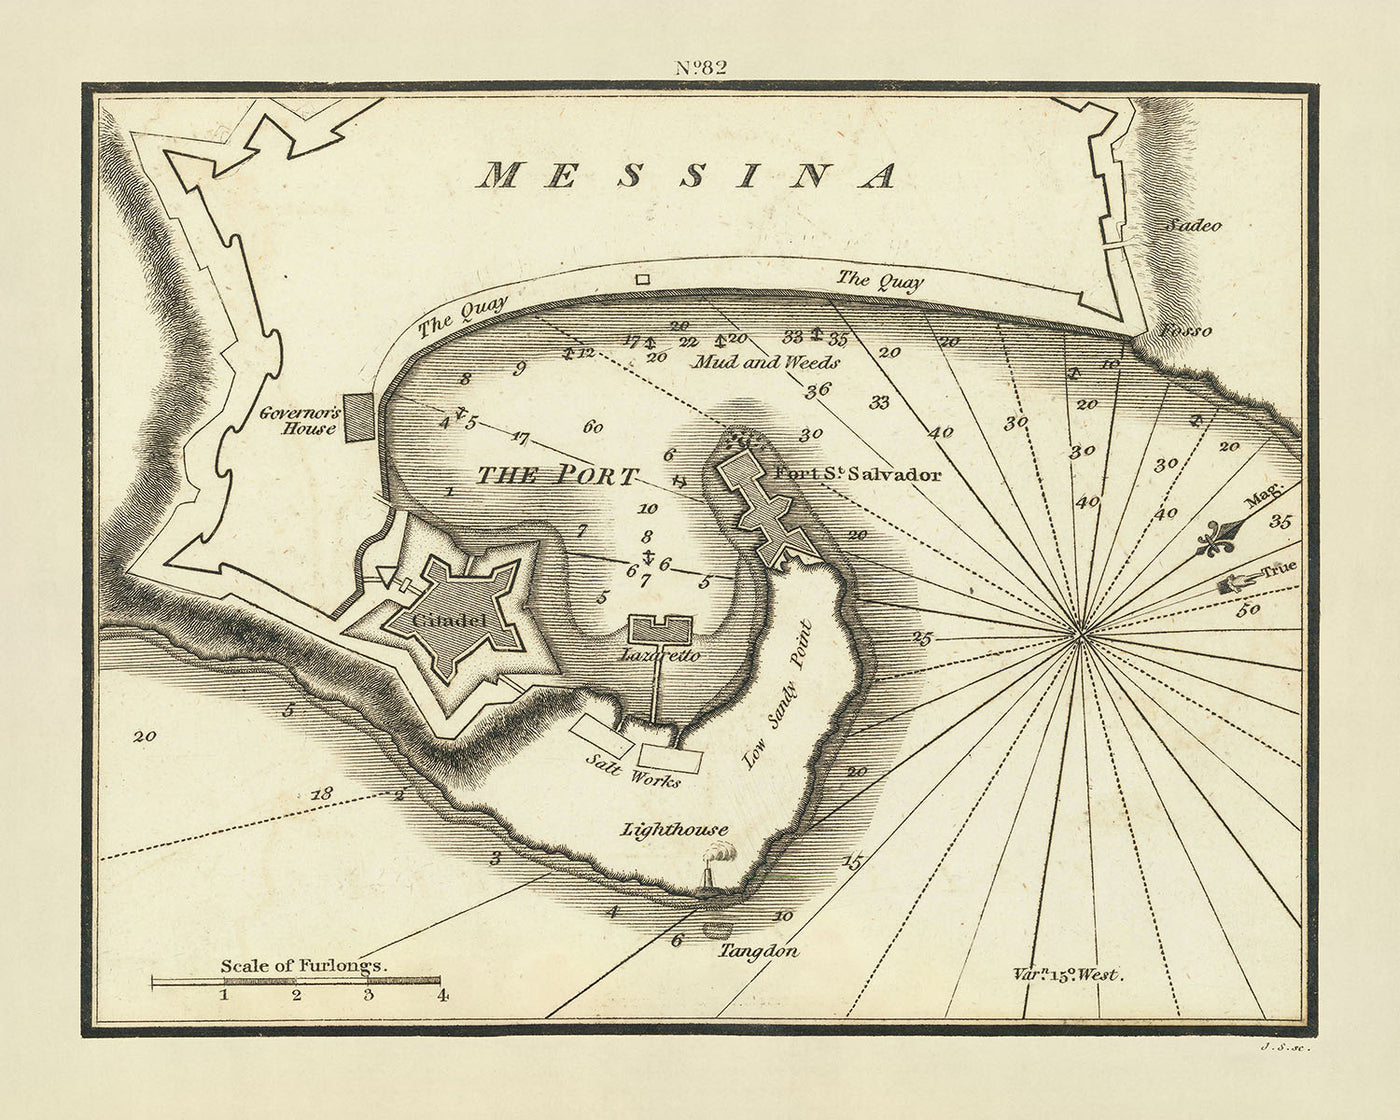 Ancienne carte marine de Messine par Heather, 1802 : Citadelle, Fort Saint-Salvador, Salines